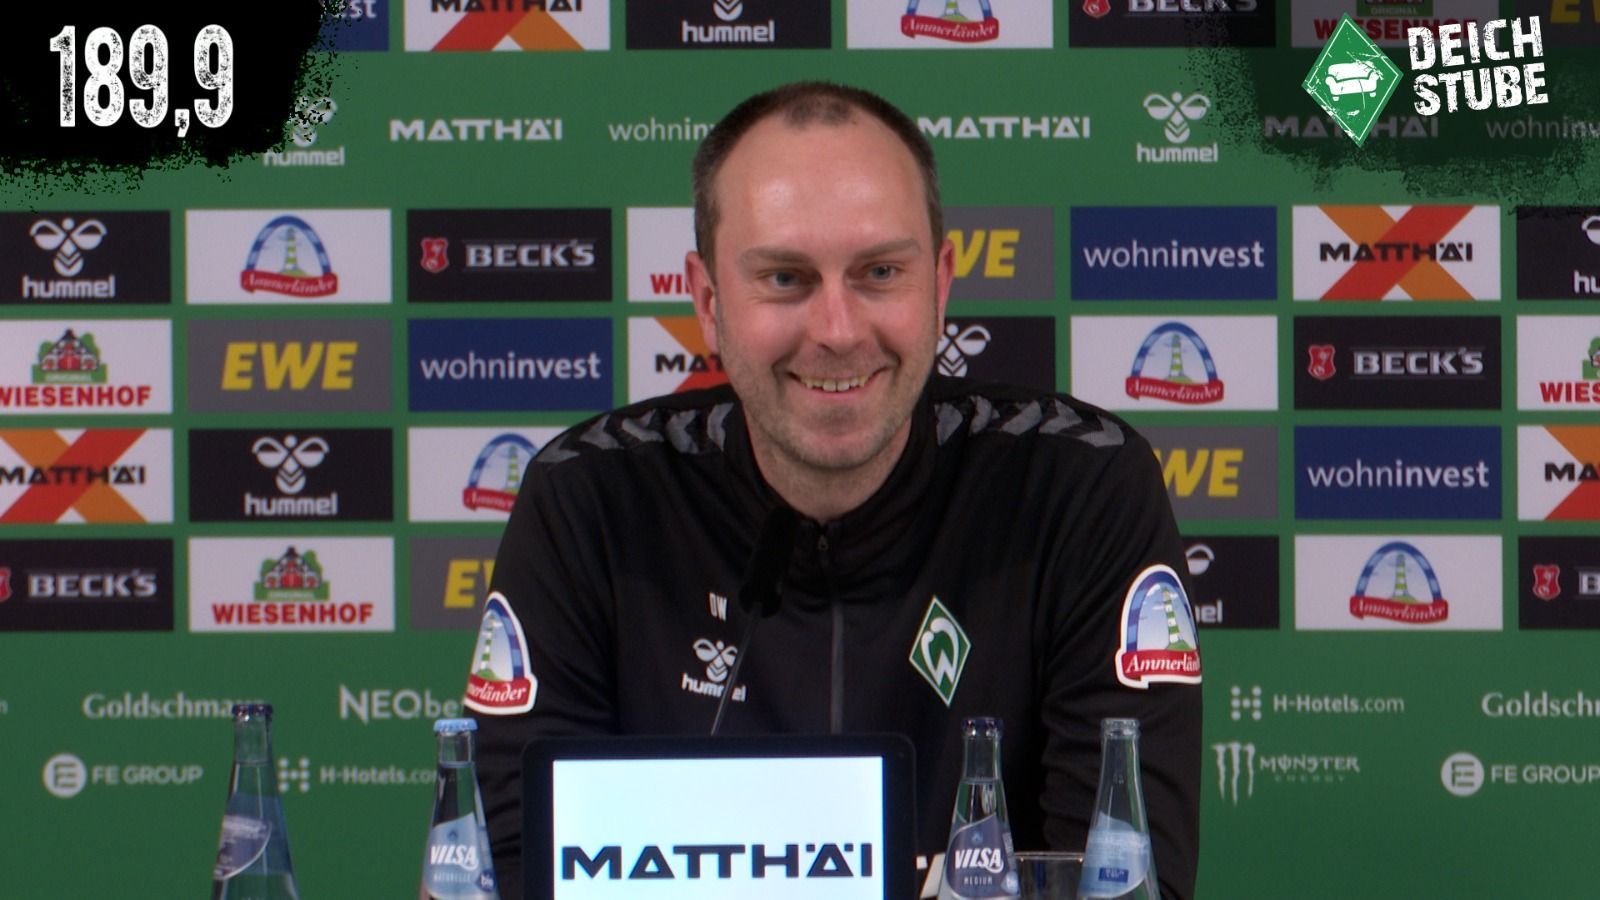 Vor Werder Bremen gegen den VfL Bochum: Die Highlights der Pressekonferenz in 189,9 Sekunden!